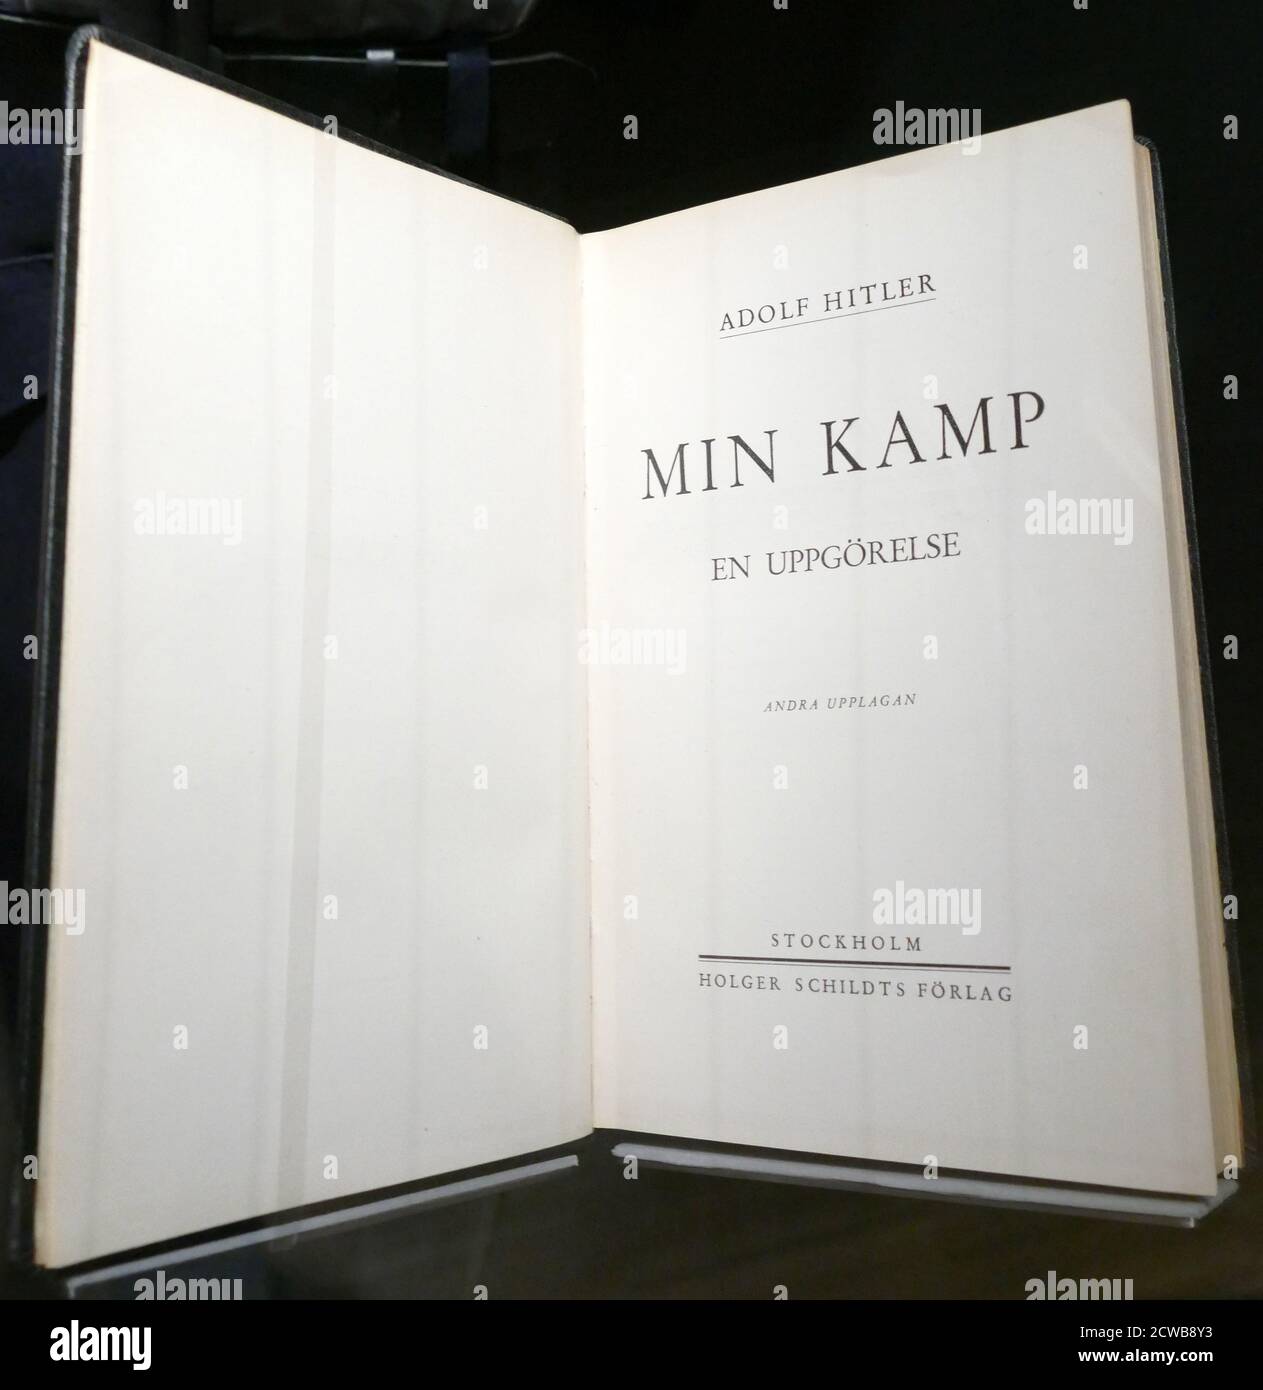 Edition suédoise de Mein Kampf (Ma lutte ou mon combat), manifeste autobiographique du chef du Parti nazi Adolf Hitler. Le travail décrit le processus par lequel Hitler est devenu antisémite et décrit son idéologie politique et ses projets futurs pour l'Allemagne. Le volume 1 de Mein Kampf a été publié en 1925 et le volume 2 en 1926 Banque D'Images